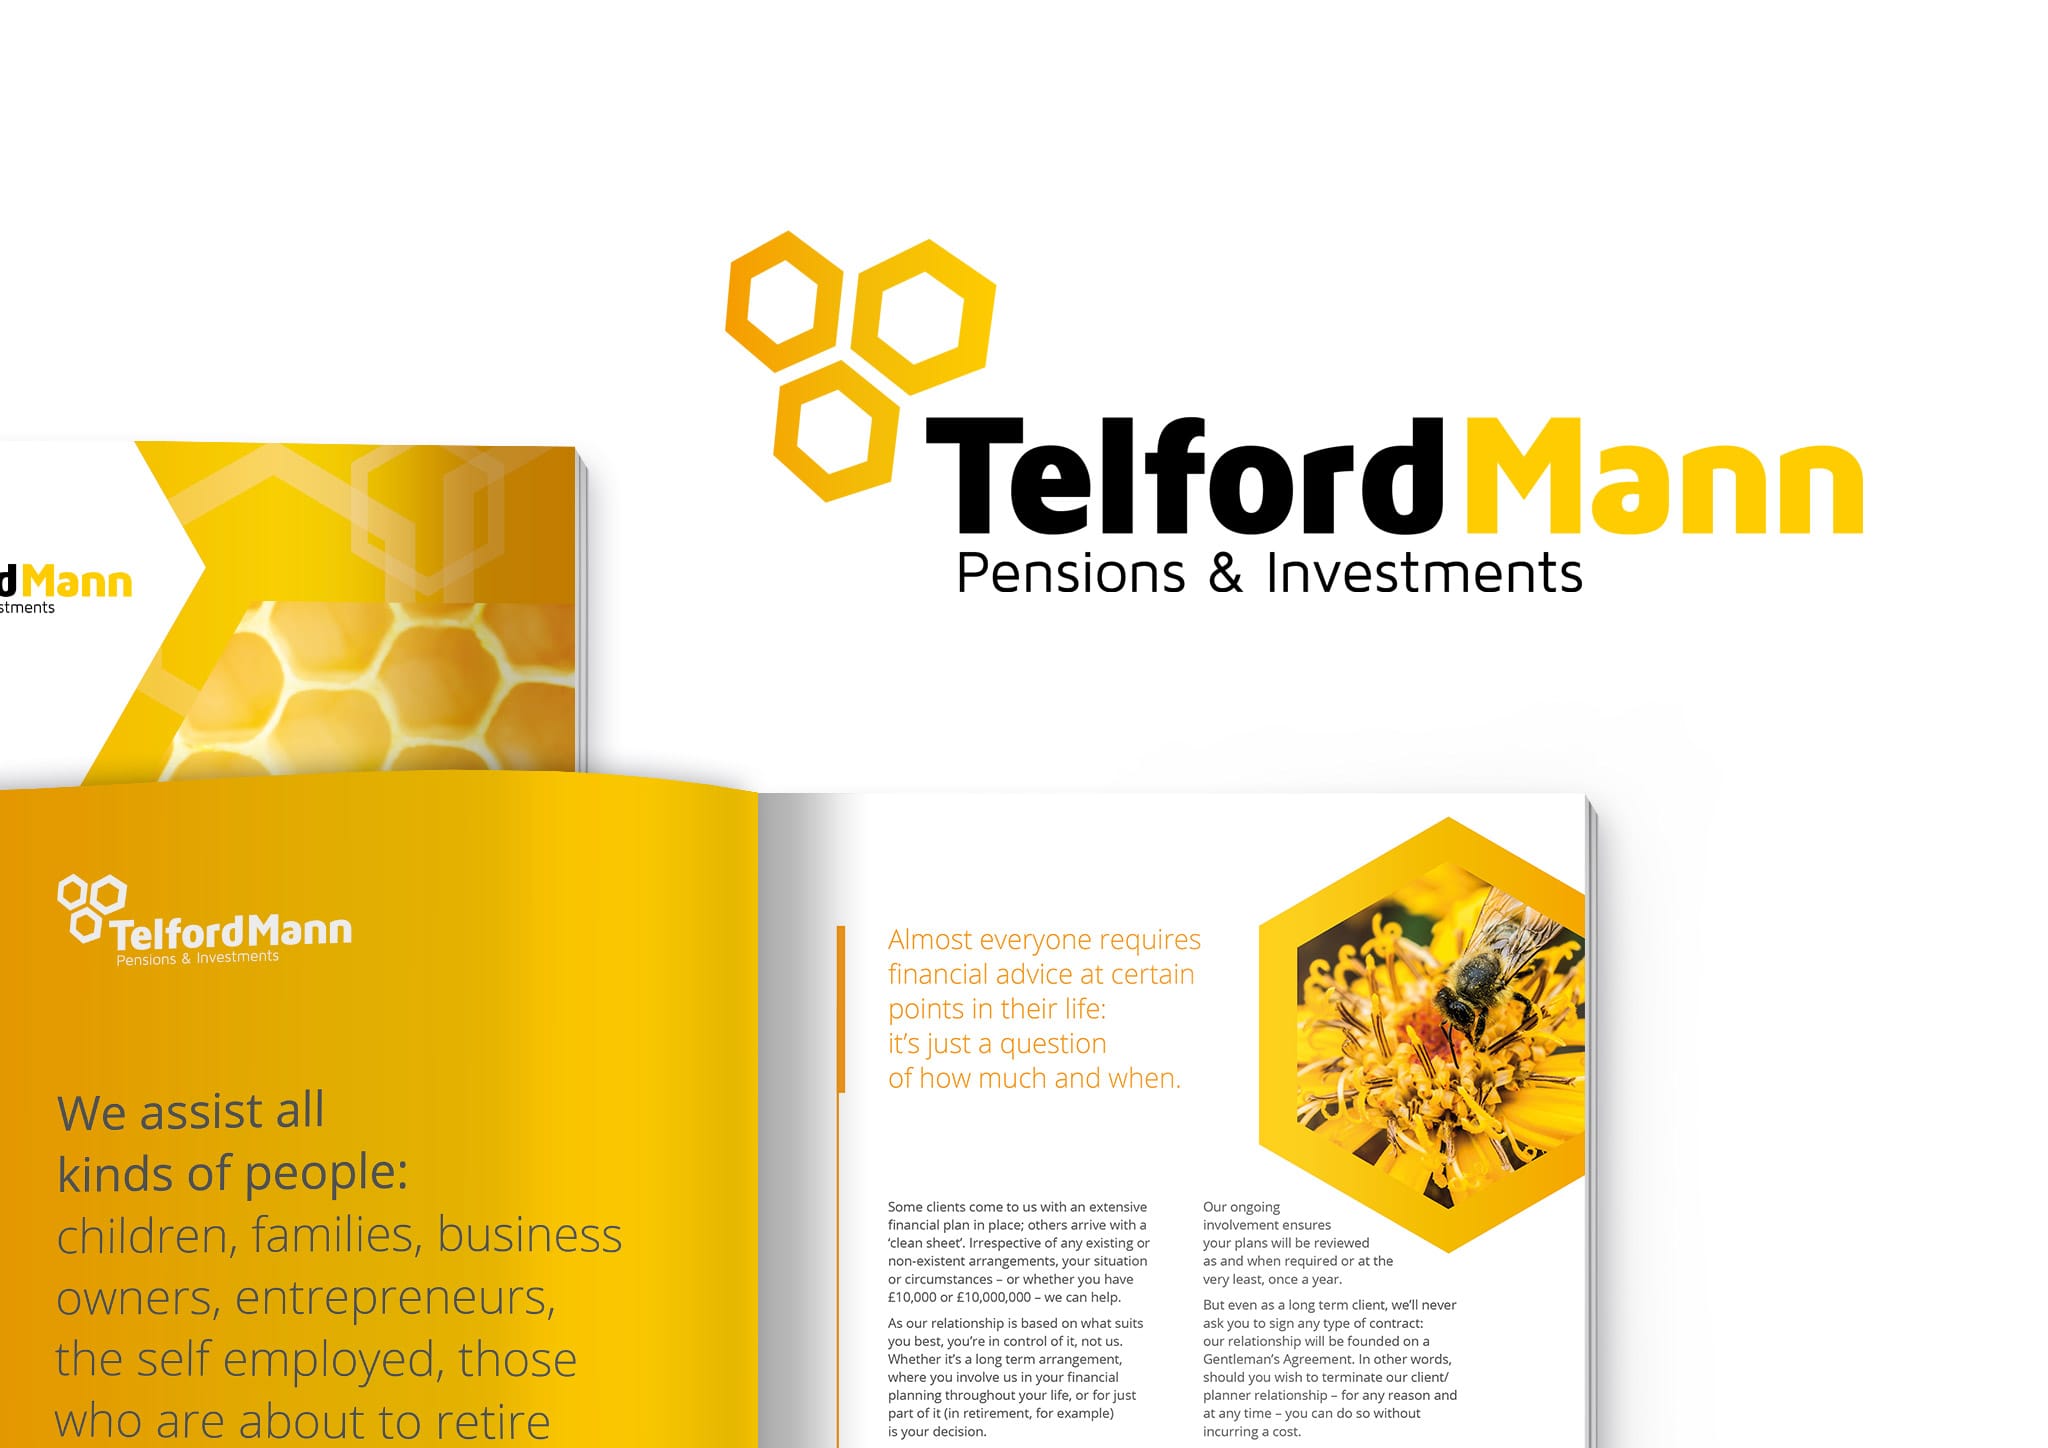 Telford Mann